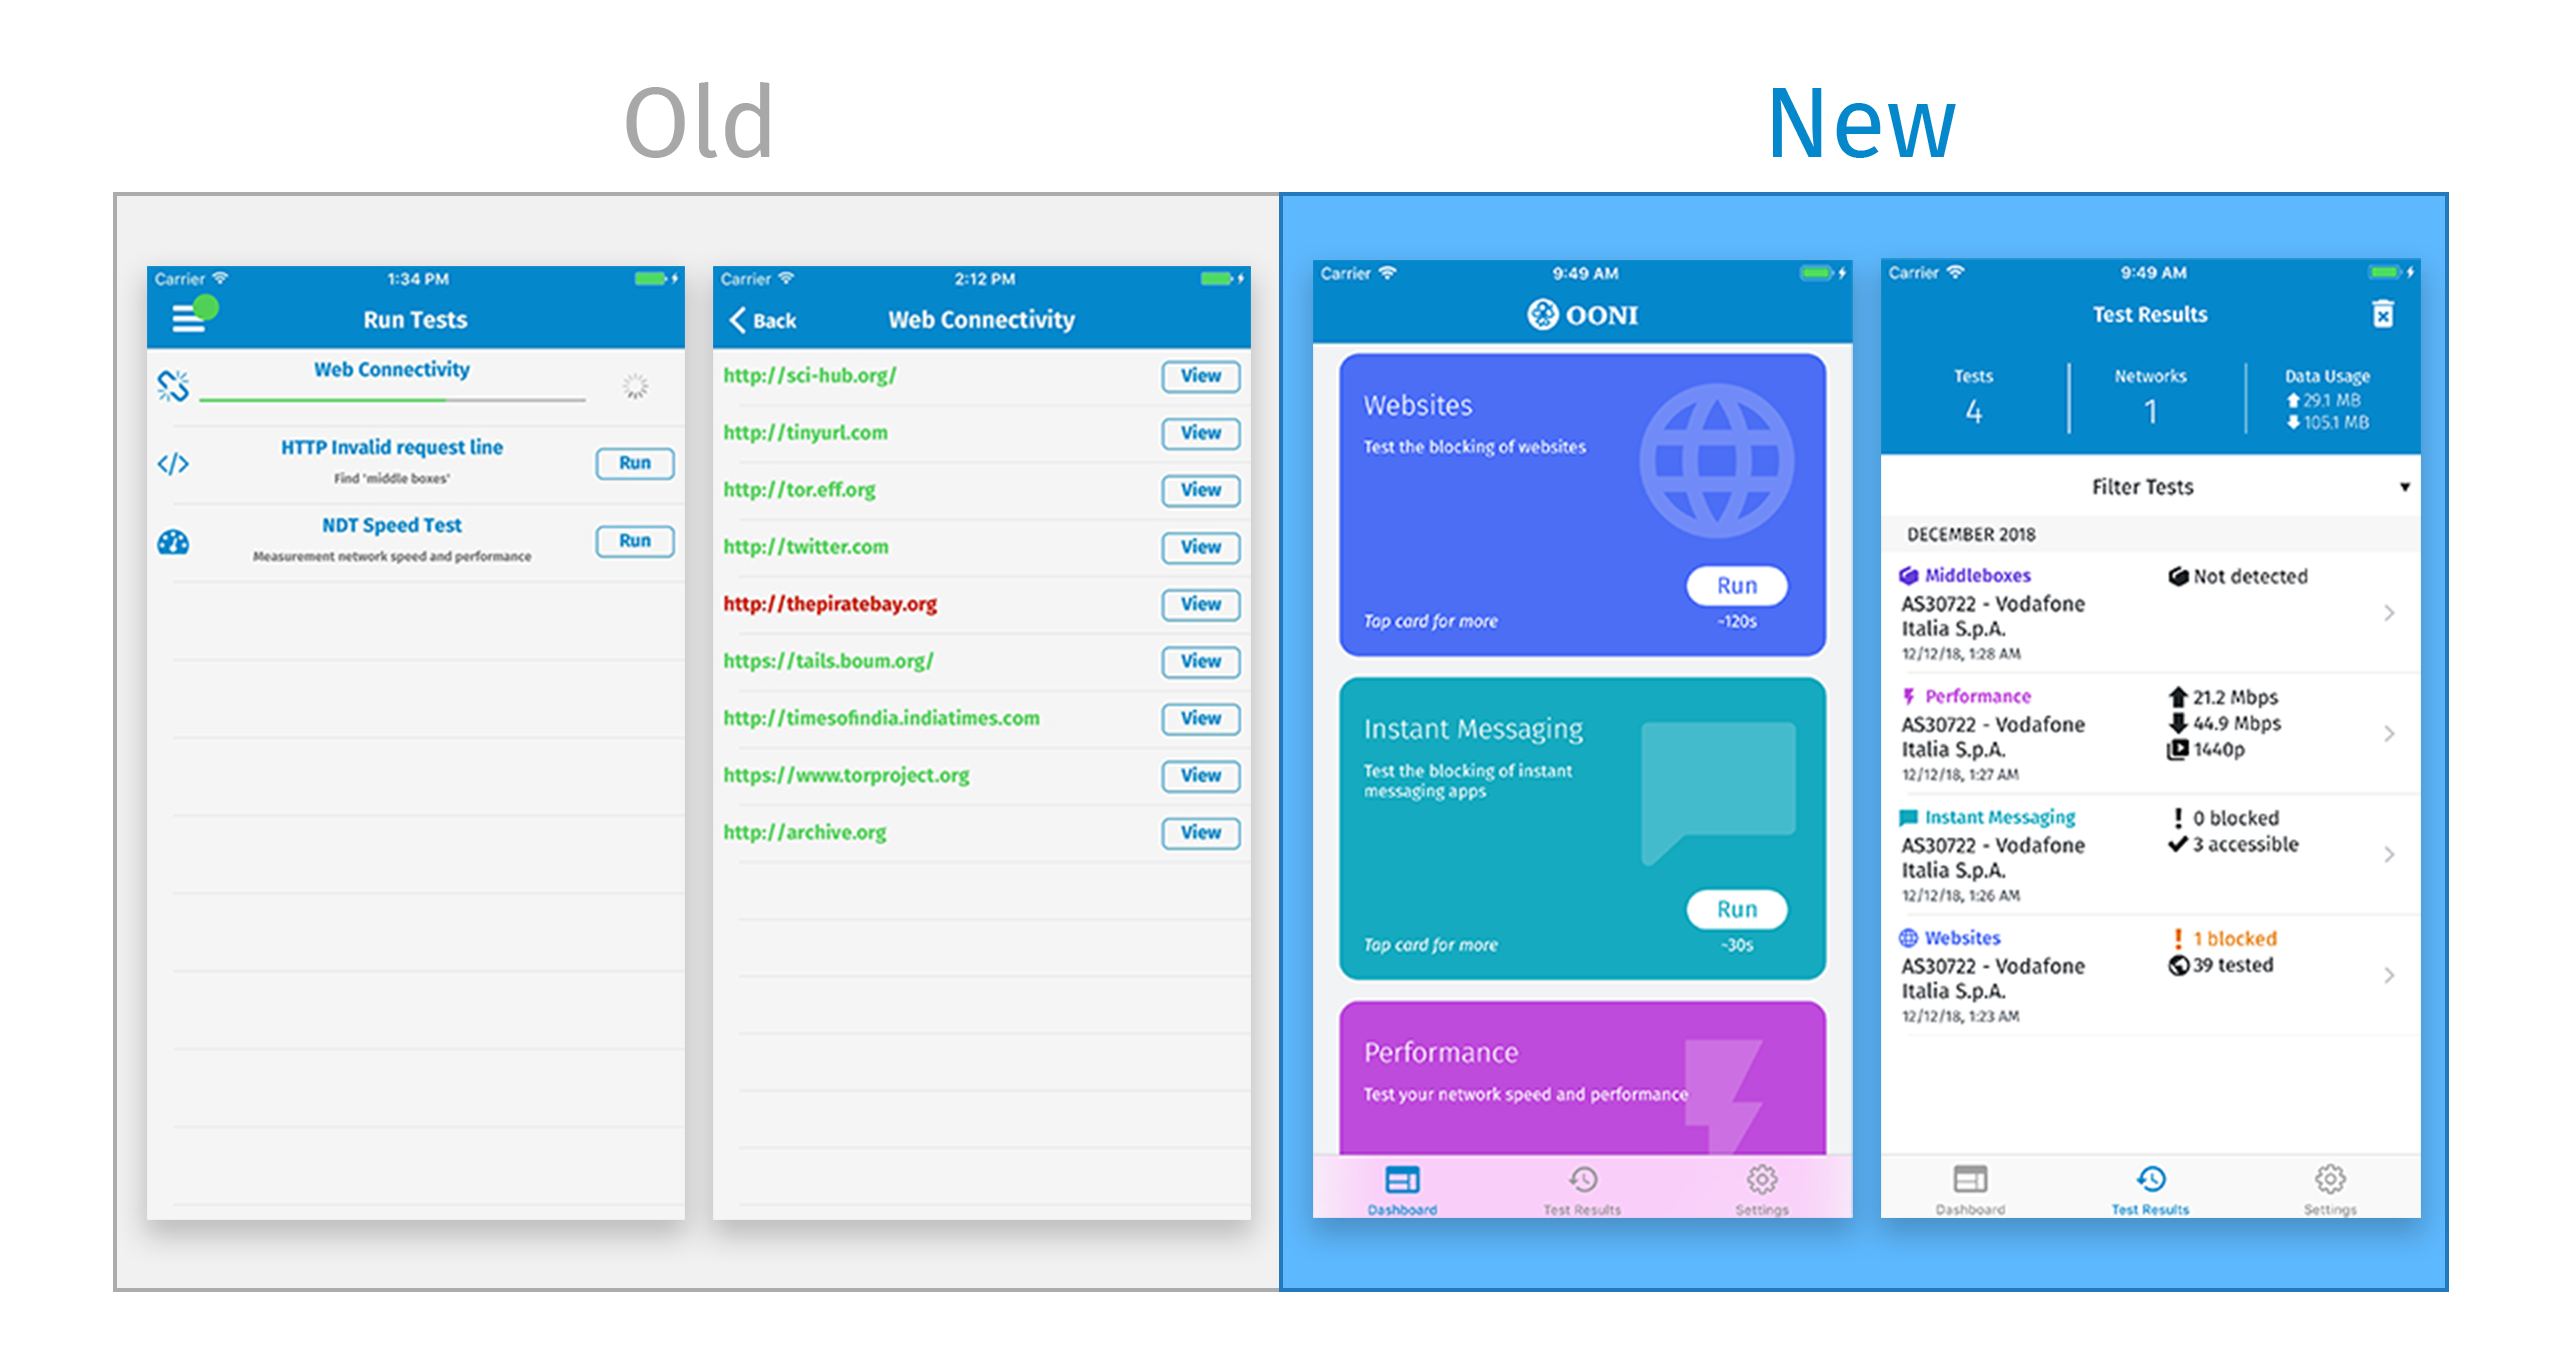 OONI Probe Mobile: Old vs. New